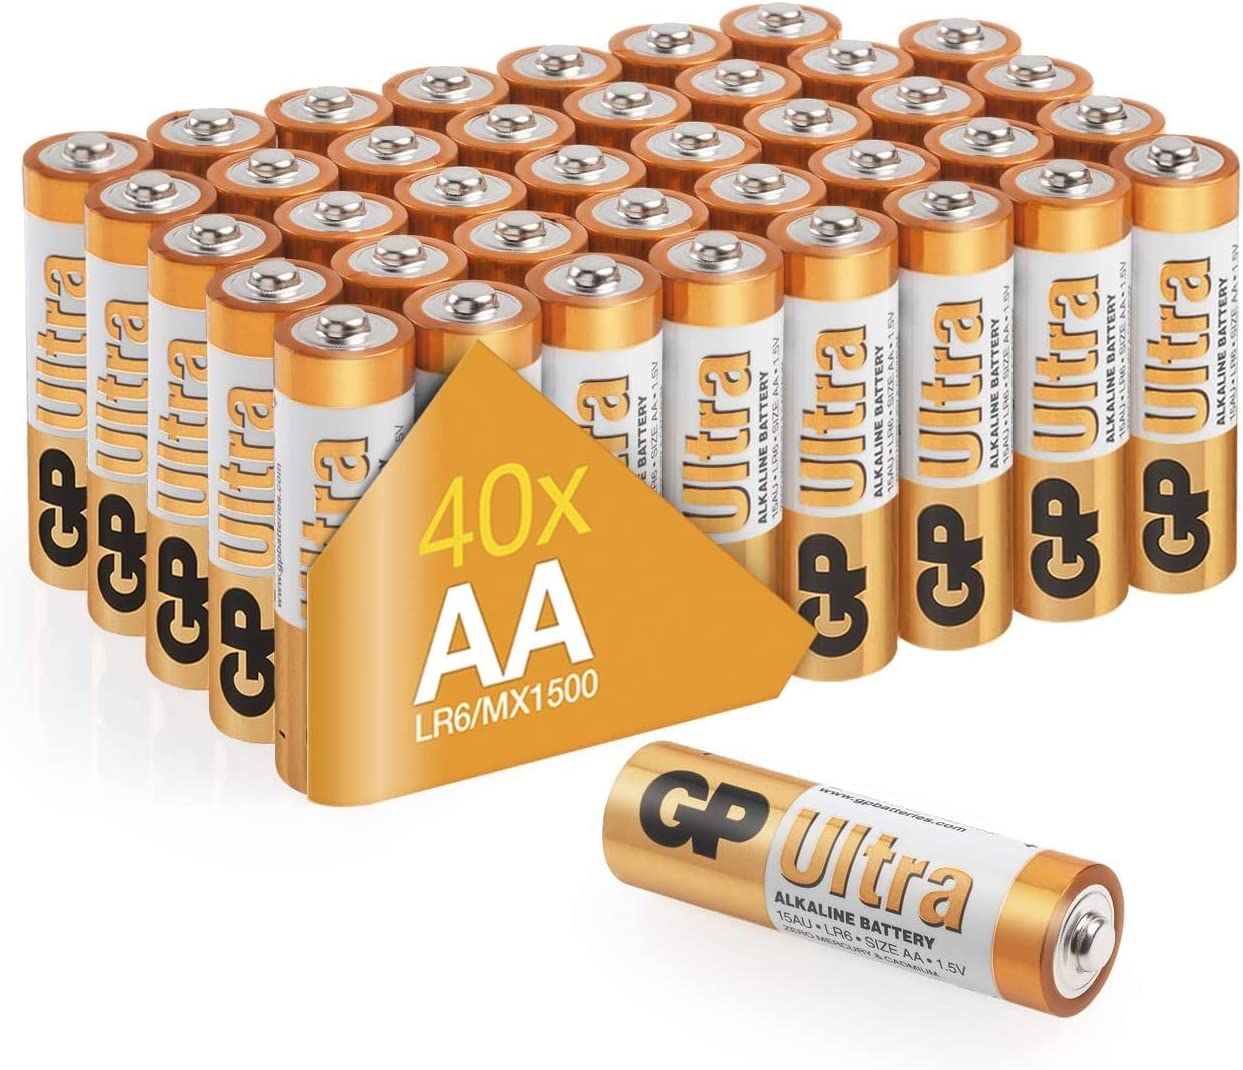 Piles AA - Lot de 40 Piles, GP Ultra, Batteries Alcalines AA LR6 1,5v, Longue durée, très puissantes, utilisation quotidienne